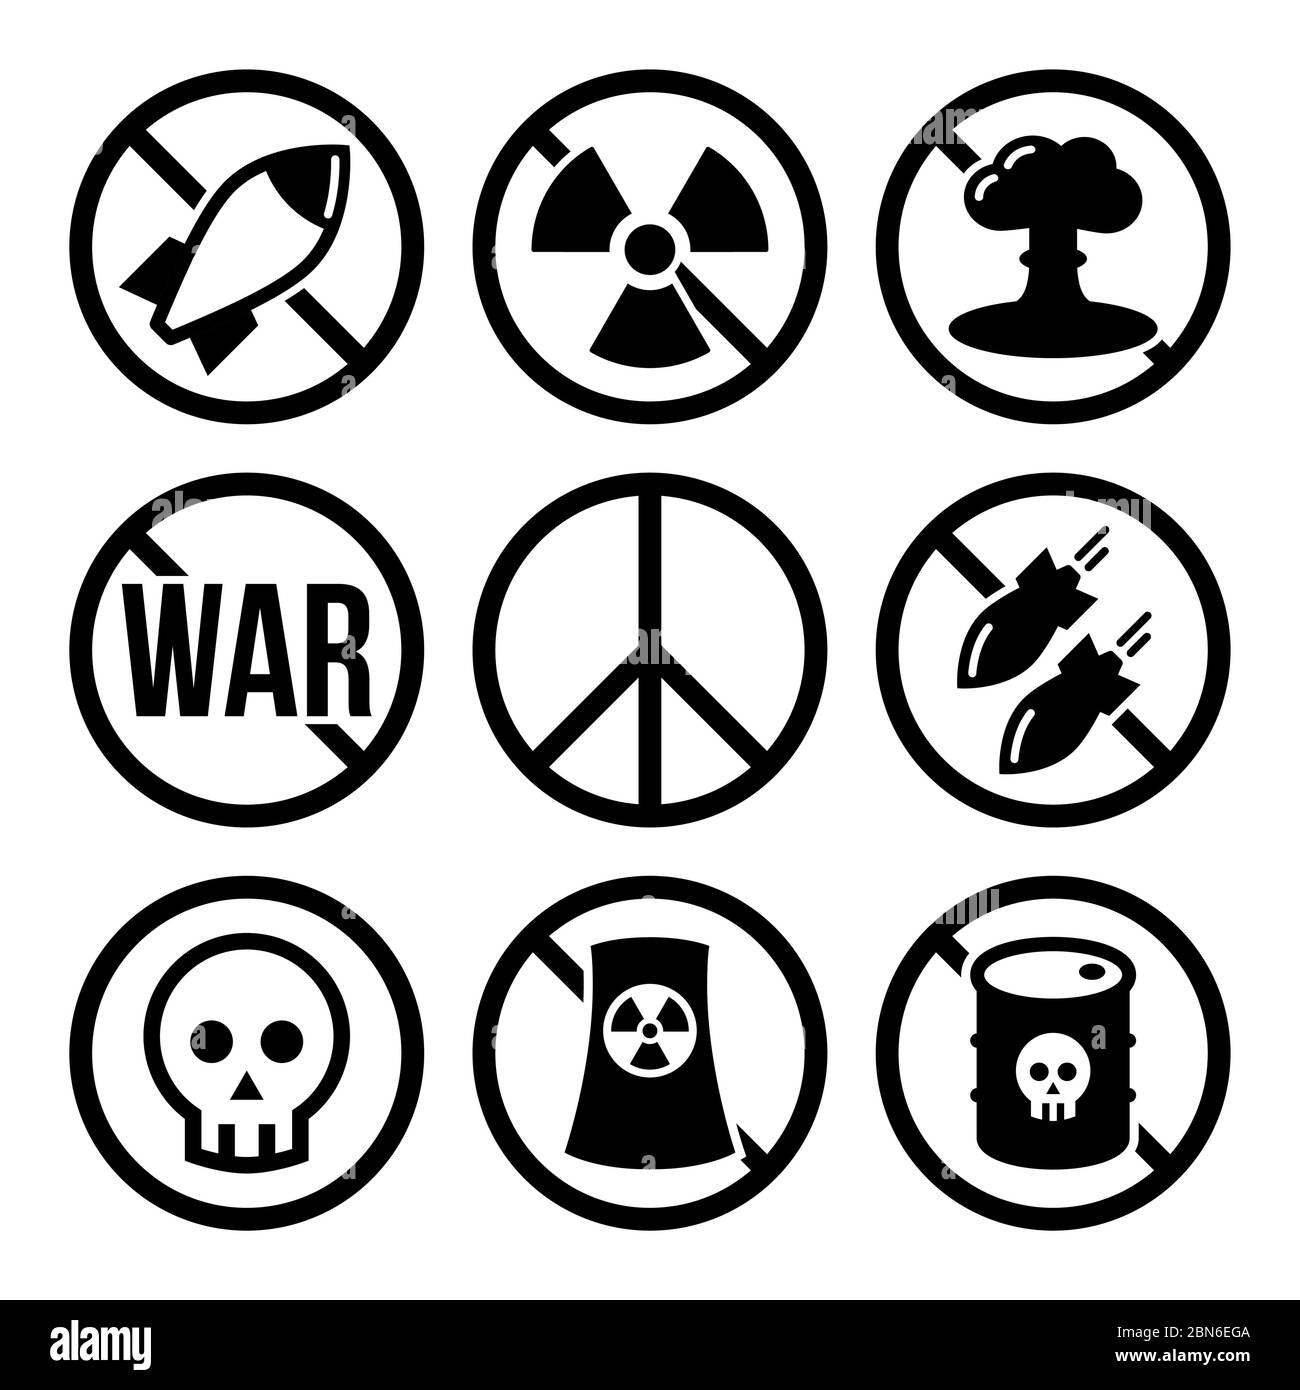 No arma nucleare, no guerra, no bombe vettori segnali di avvertimento - guerra, concetto di movimento di pace No centrali nucleari, no guerra vettore segnali di avvertimento des Illustrazione Vettoriale